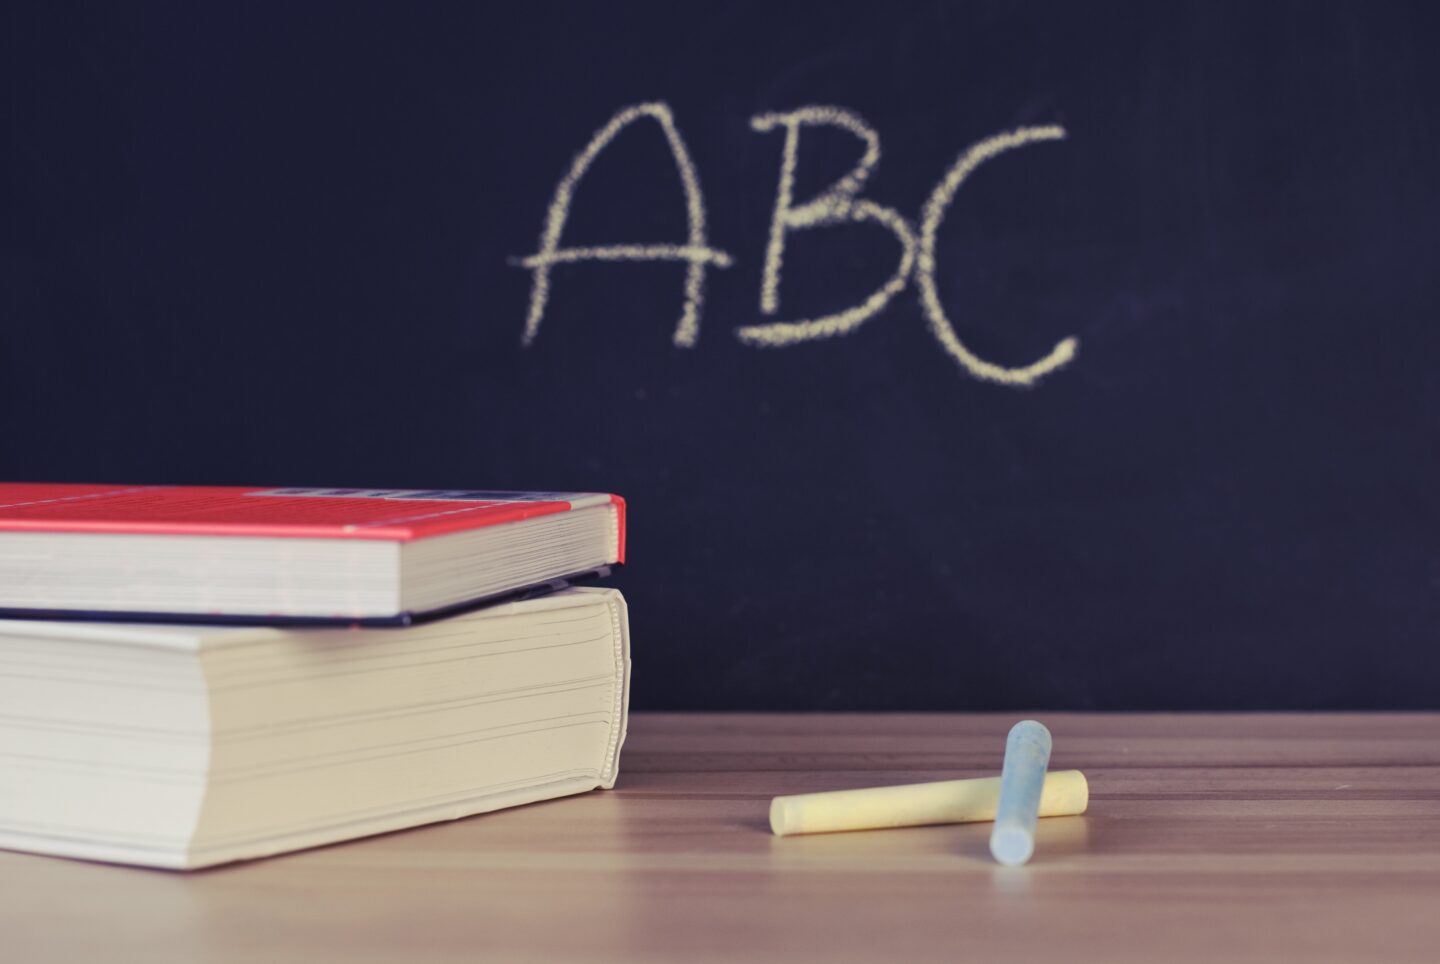 Blackboard showing ABC written in chalk with books on a desk